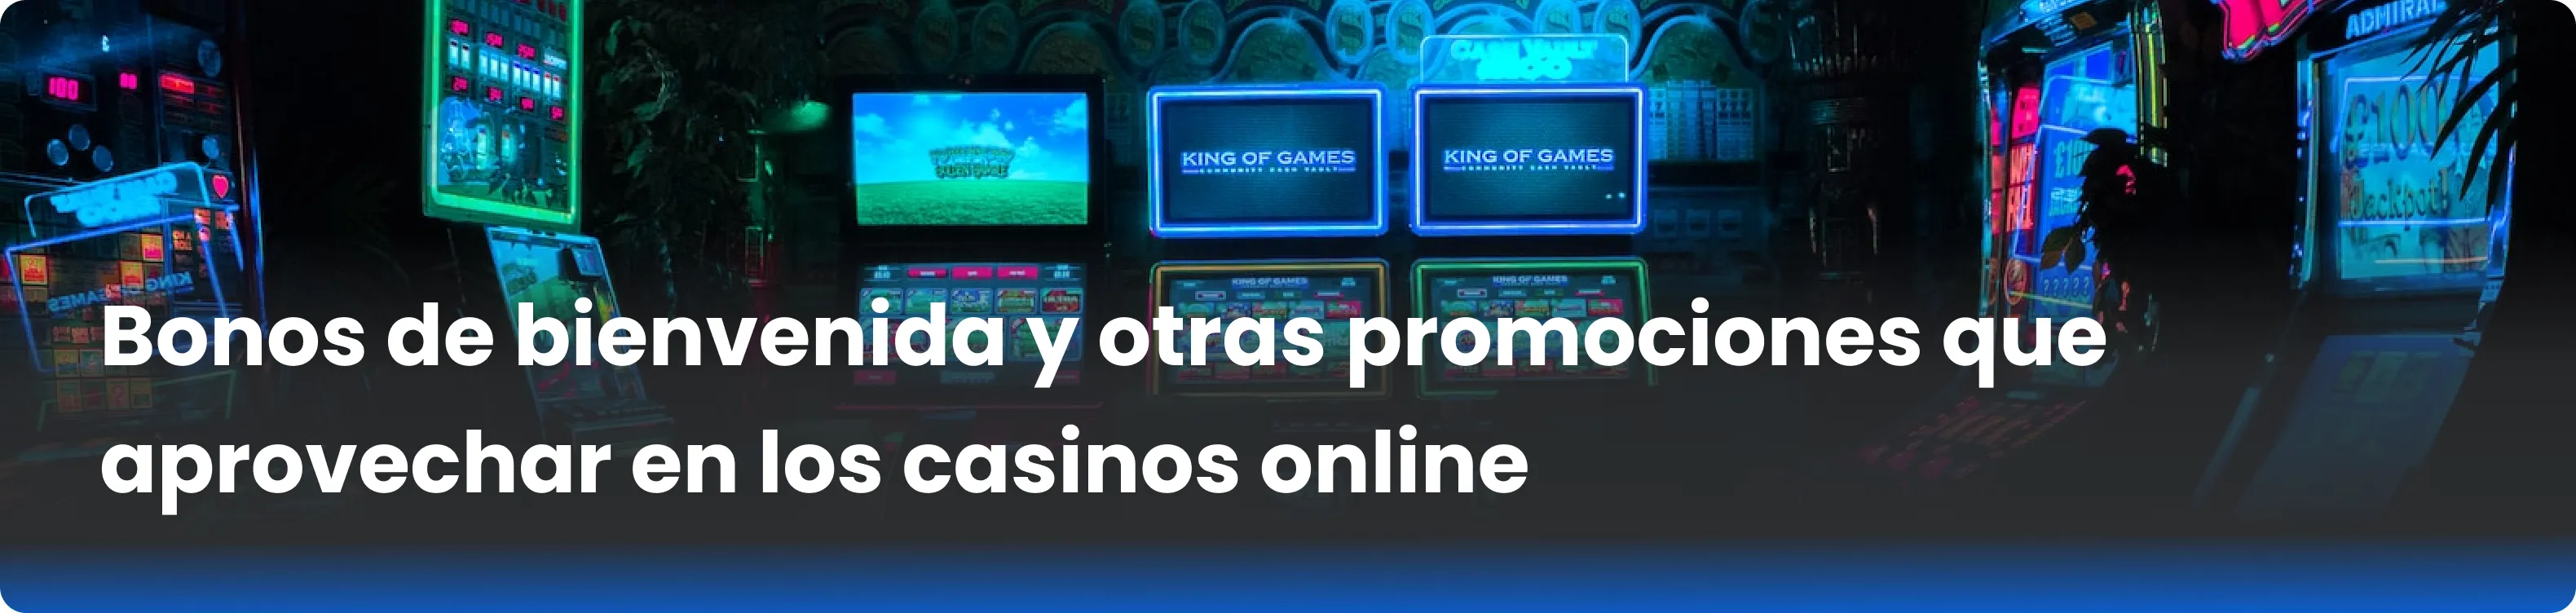 Bonos de bienvenida y otras promociones que aprovechar en los casinos online 